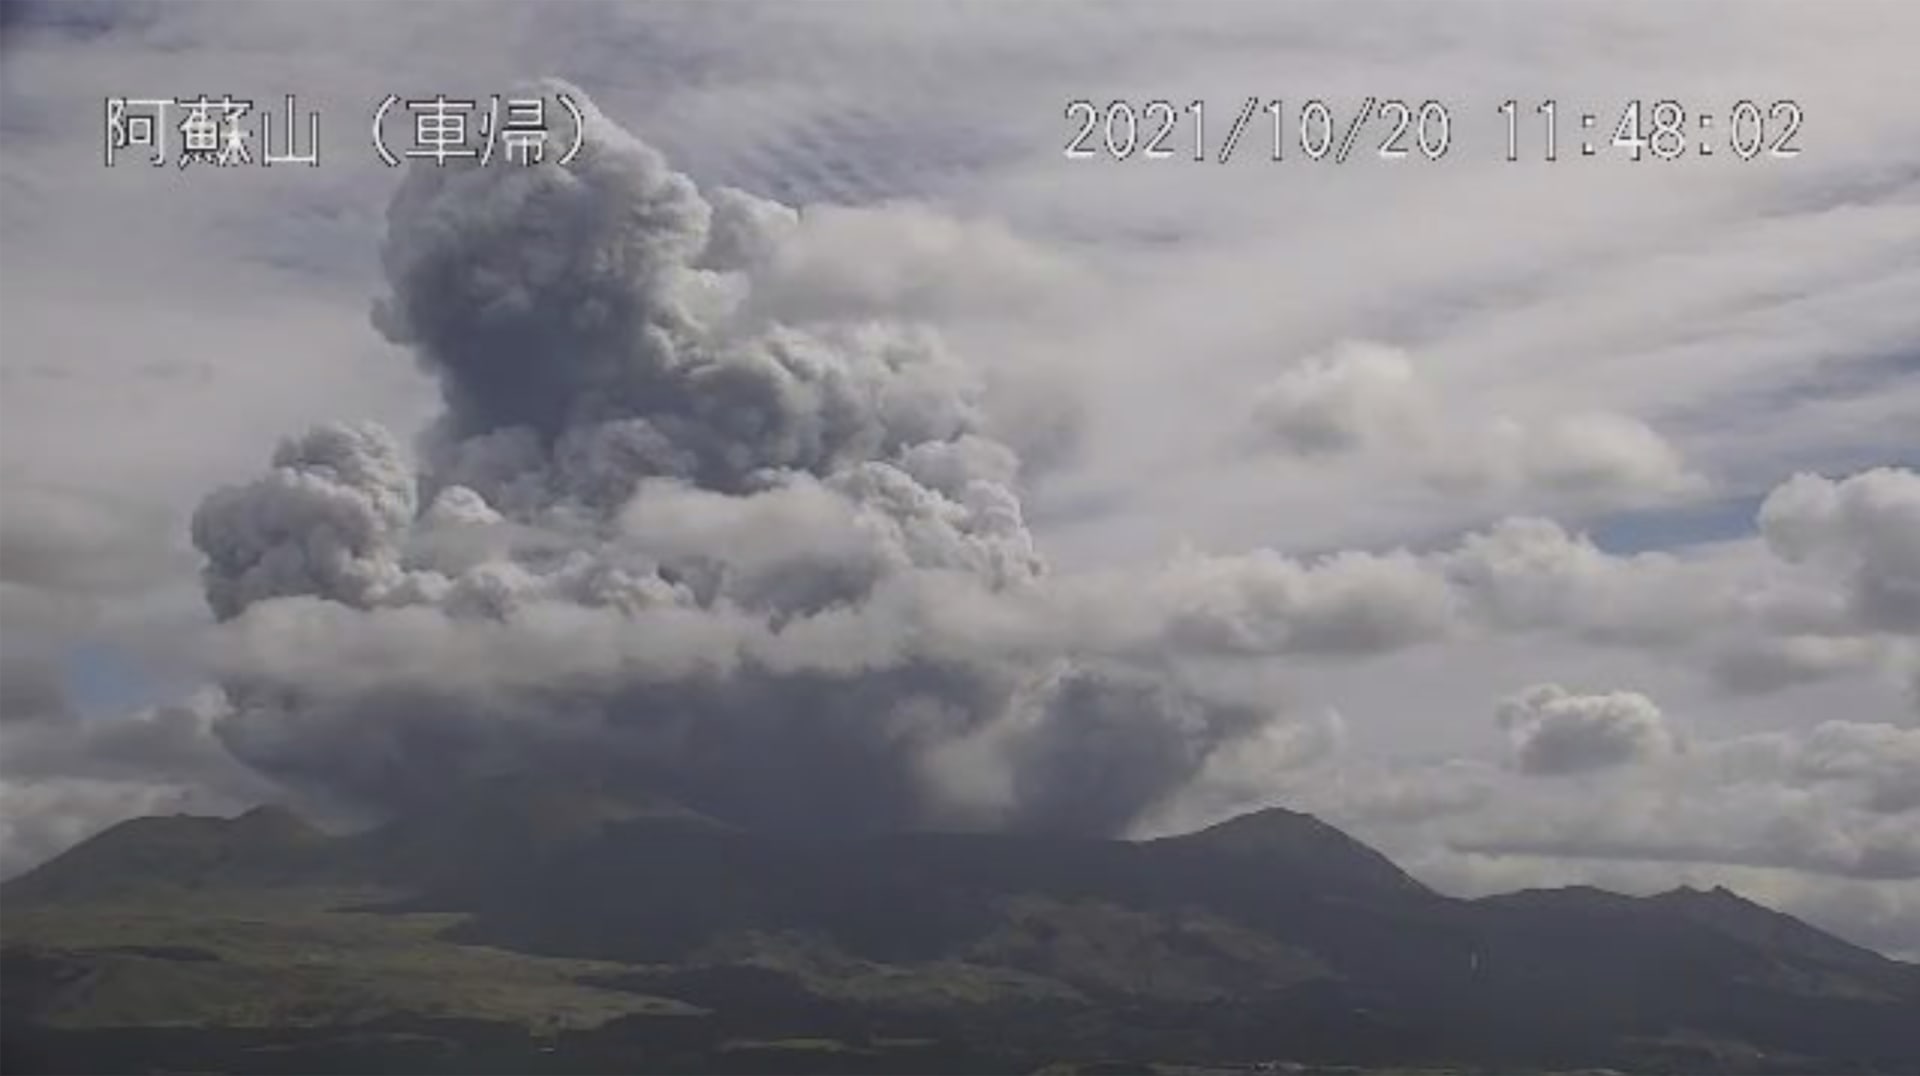 Sopka Aso vychrlila obrovská mračna kouře a popelu.